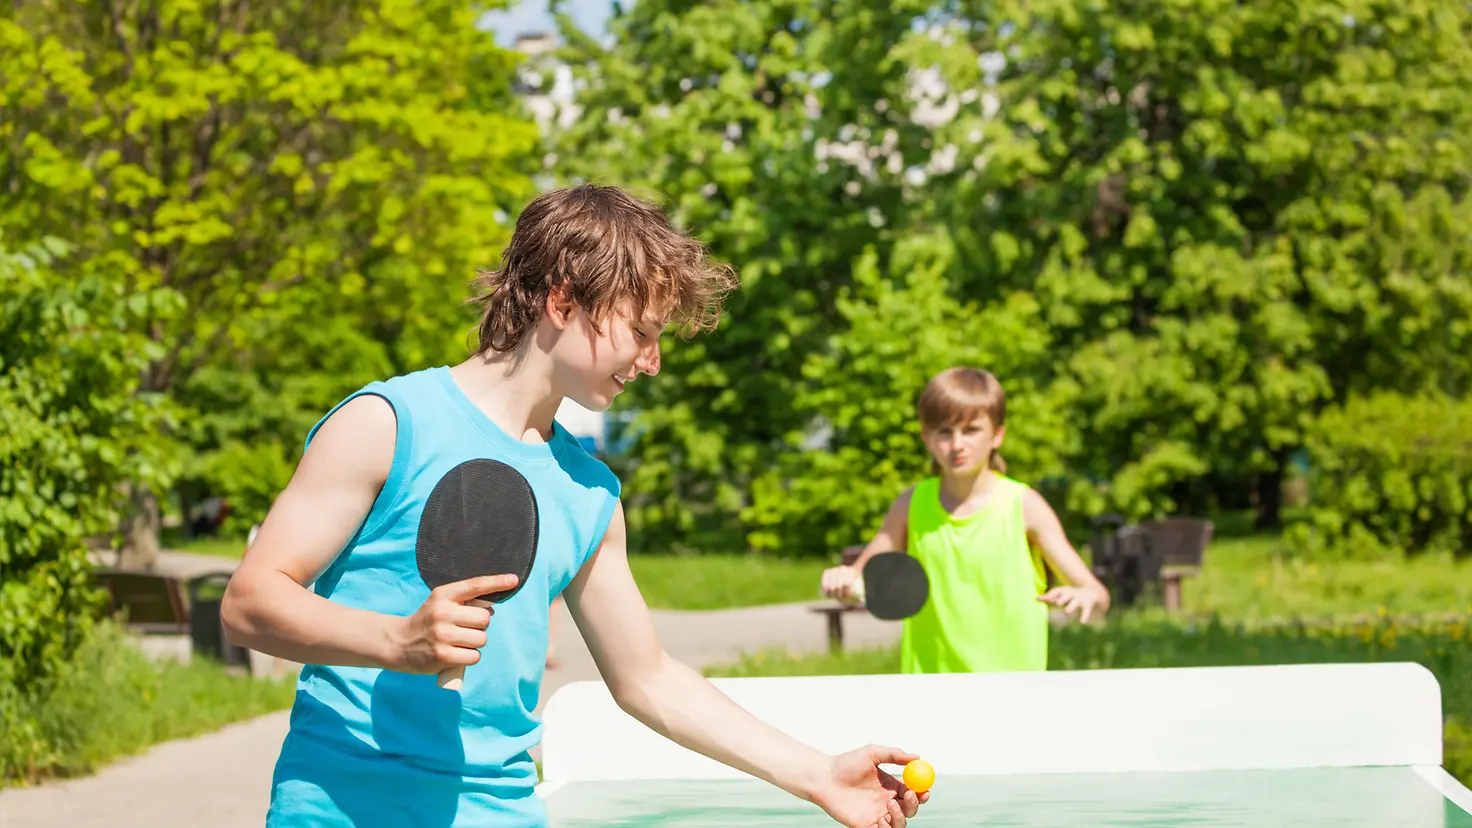 Das Bild zeigt zwei Jungs beim Tischtennis spielen.